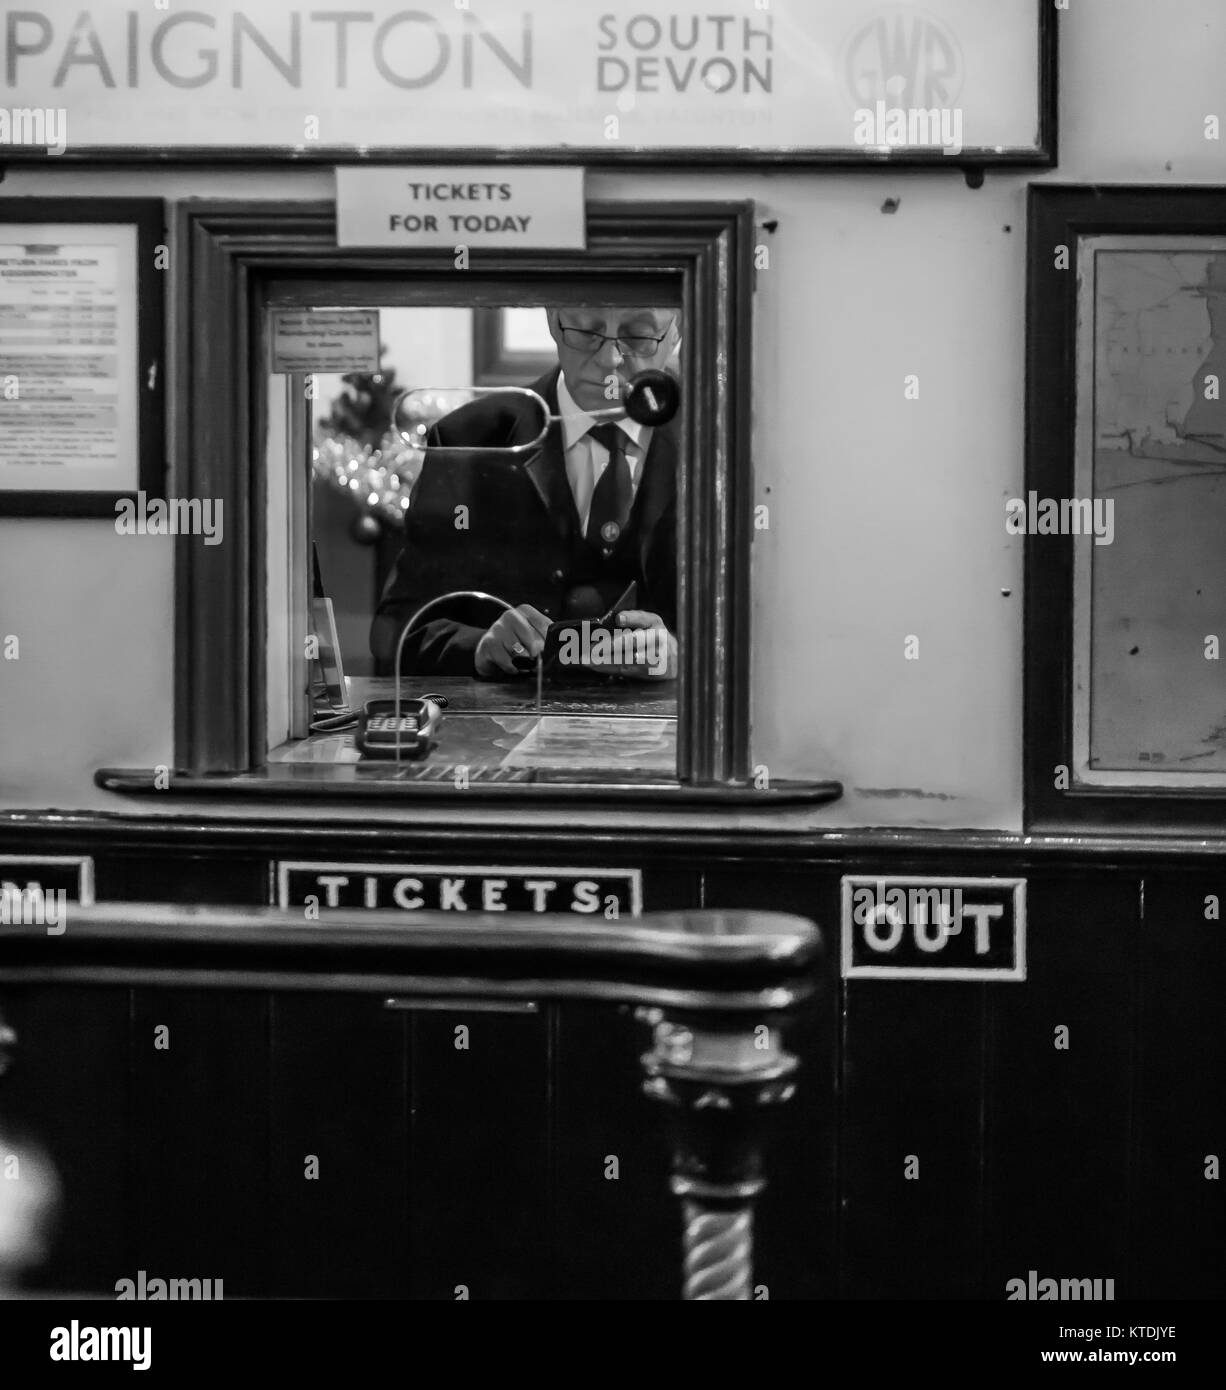 Photographie monochrome, noir et blanc du chemin de fer du patrimoine de Severn Valley, bureau de billetterie du train Kidderminster. Vintage Railway UK, voyage ferroviaire vintage. Banque D'Images